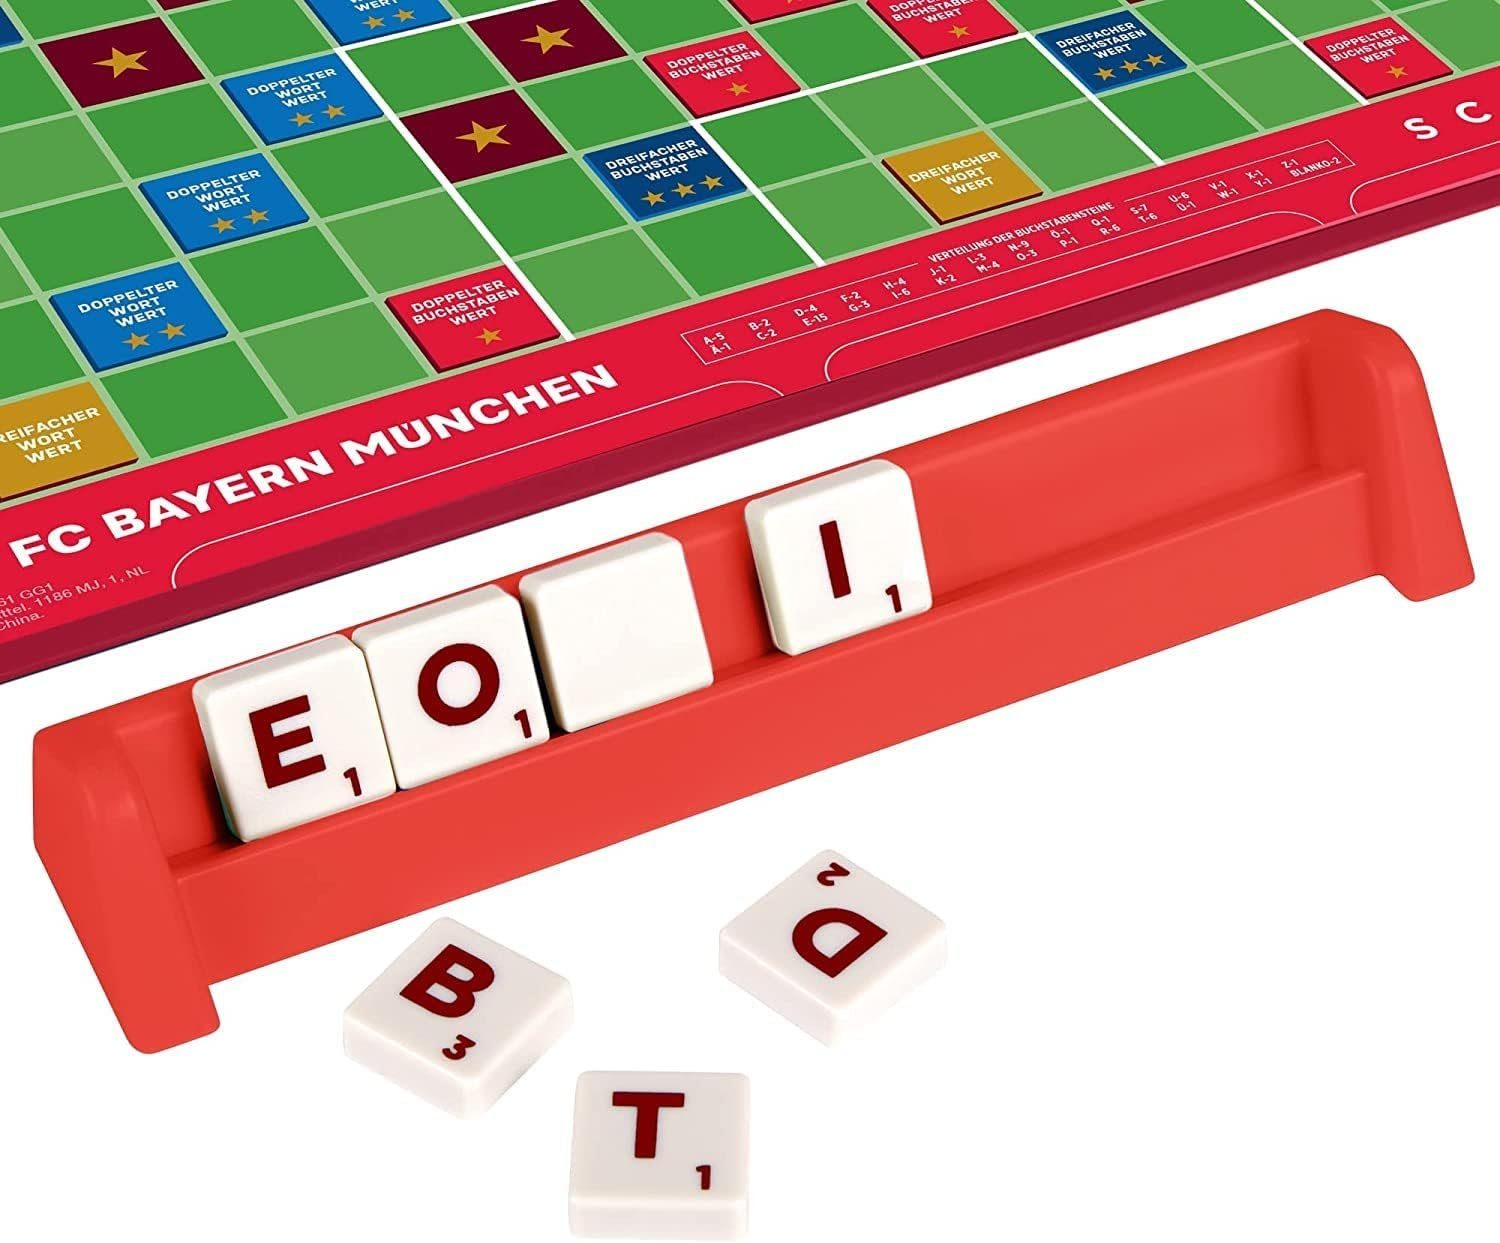 Bayern + Scrabble UNO - Mattel games Würfelbecher München Spiel, Brettspiel & FC